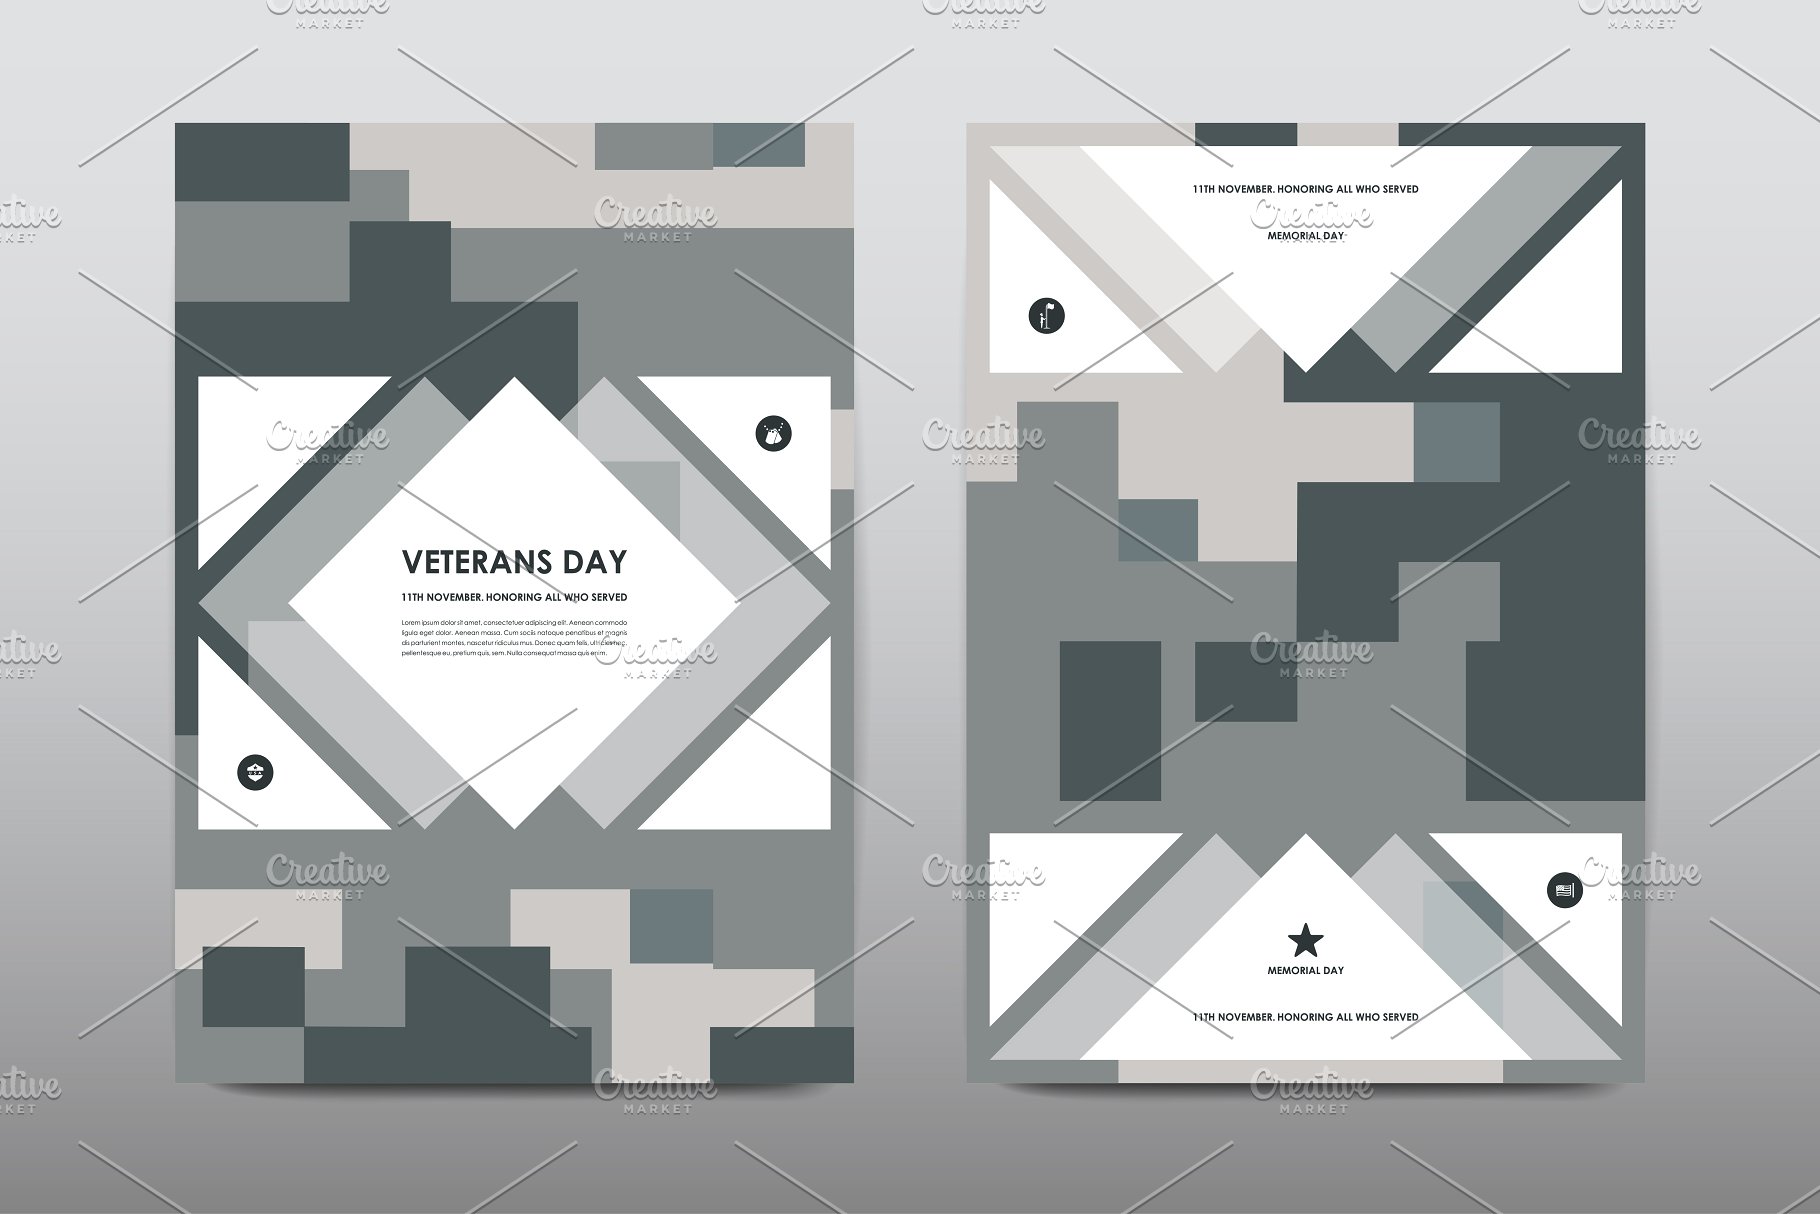 40+老兵节军人宣传小册模板 Veteran’s Day Brochures Bundle插图(26)